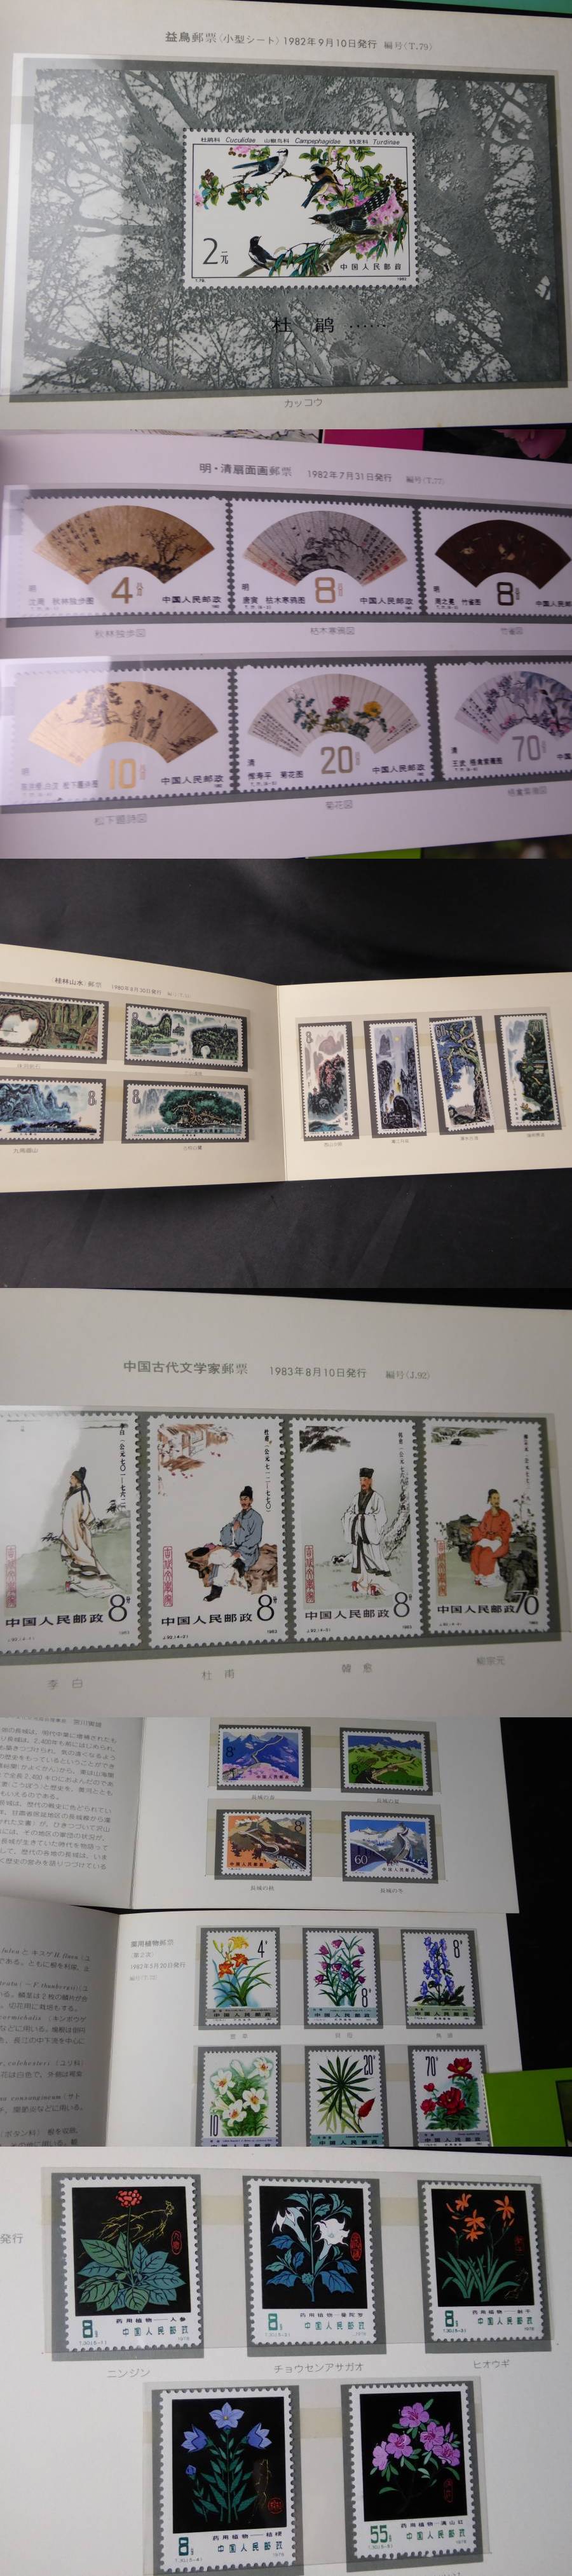 中国切手絵葉書封筒メダルT82 西廂記小型シートオオパンダ| JChere雅虎